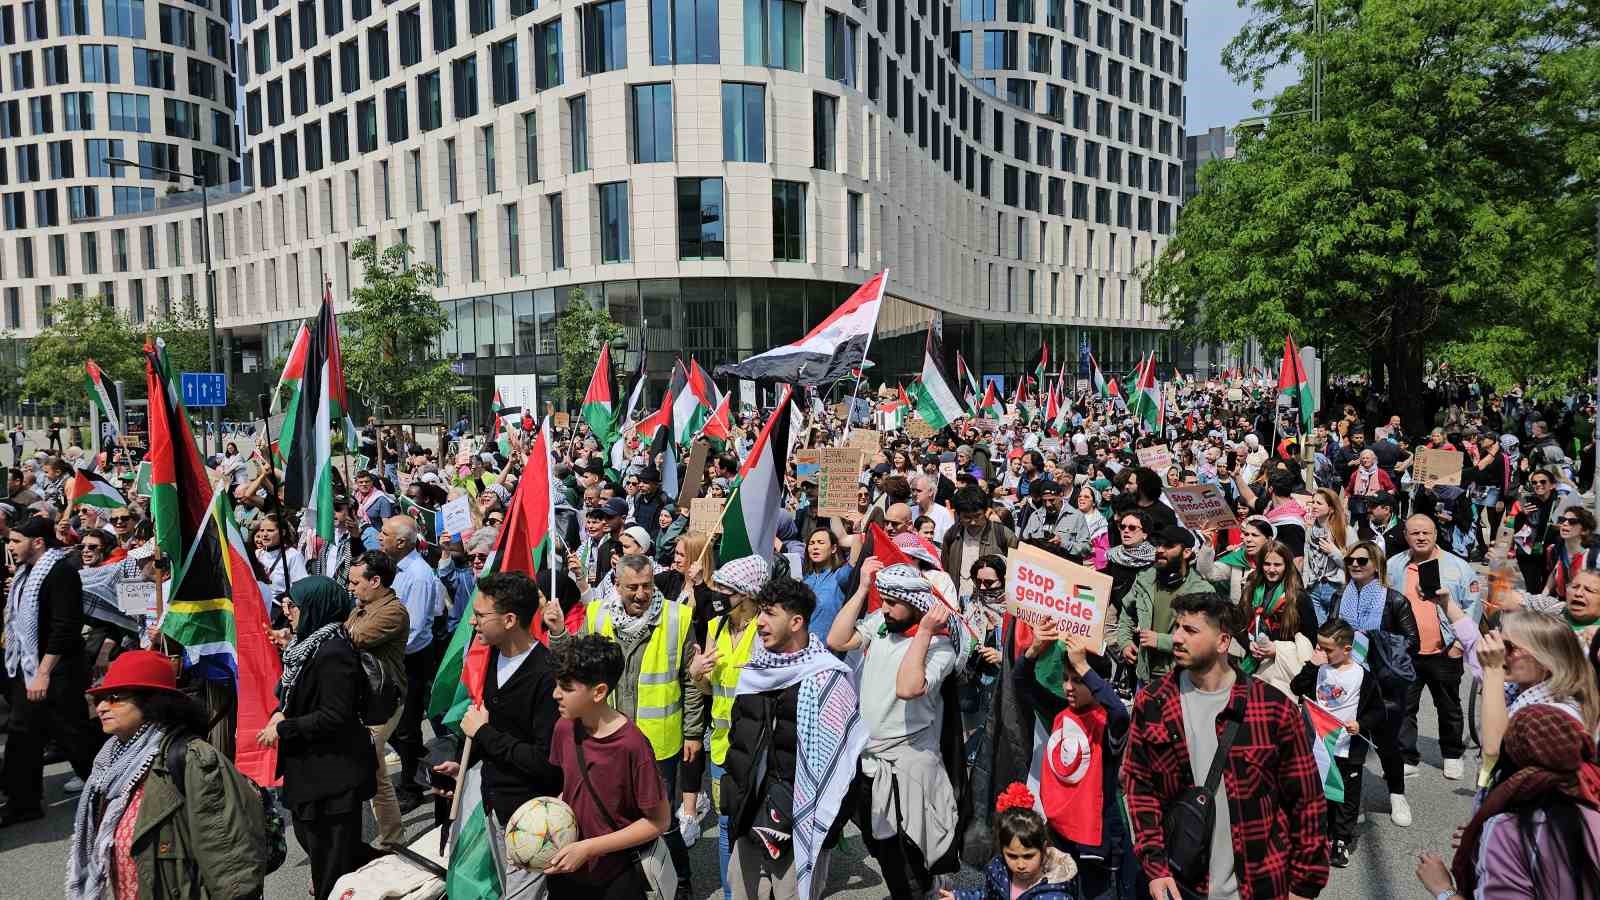 Brüksel’de binlerce kişi Gazze için yürüdü